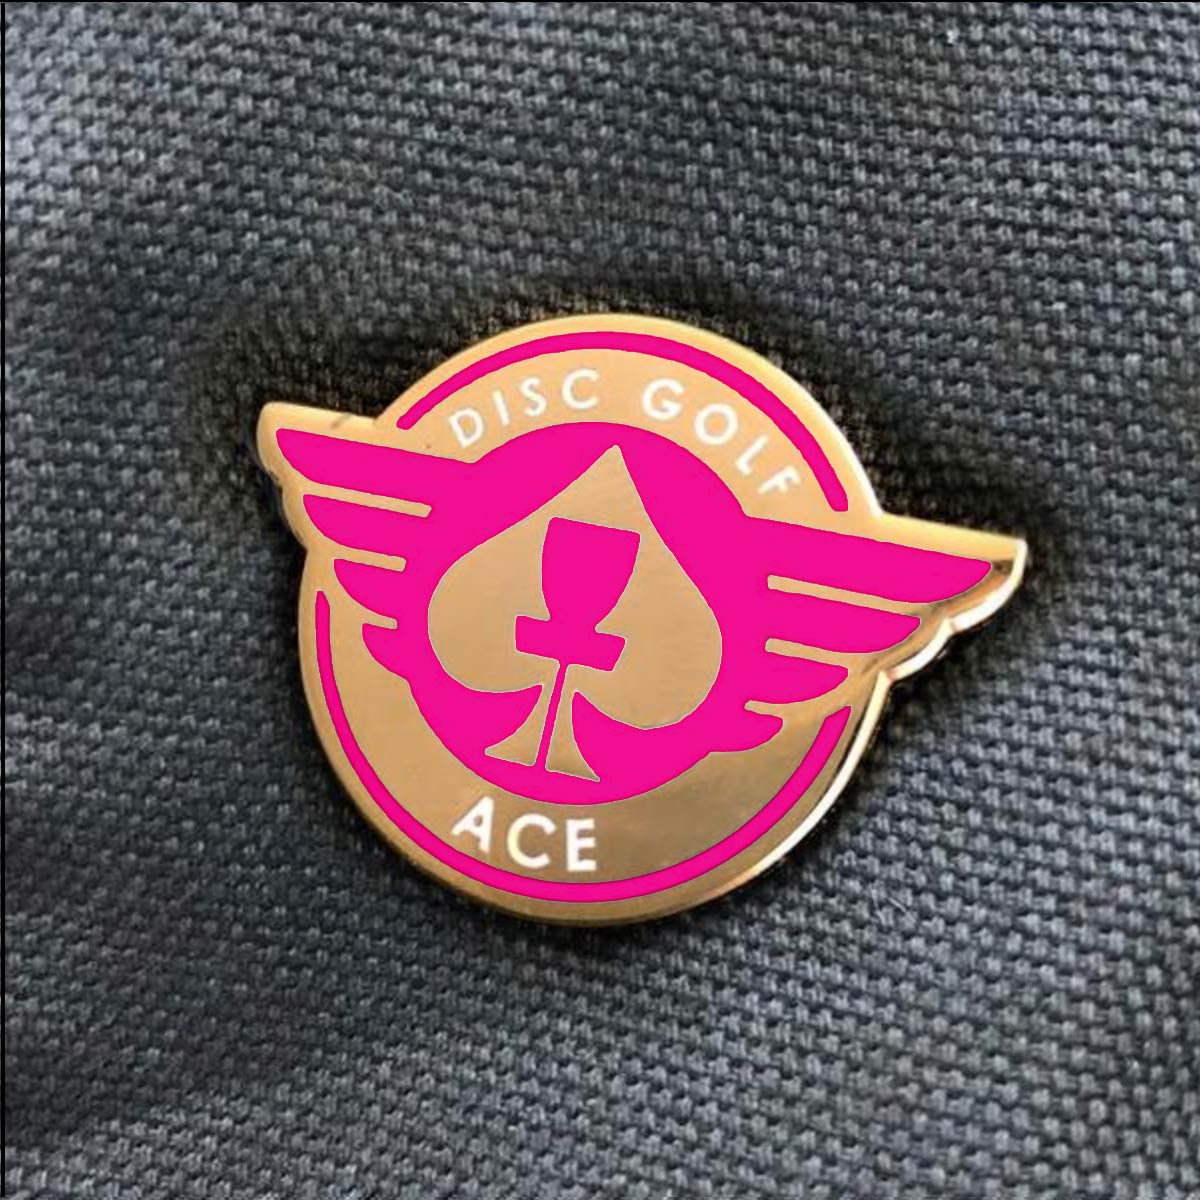 ACE Disc Golf Pin Success pink gold